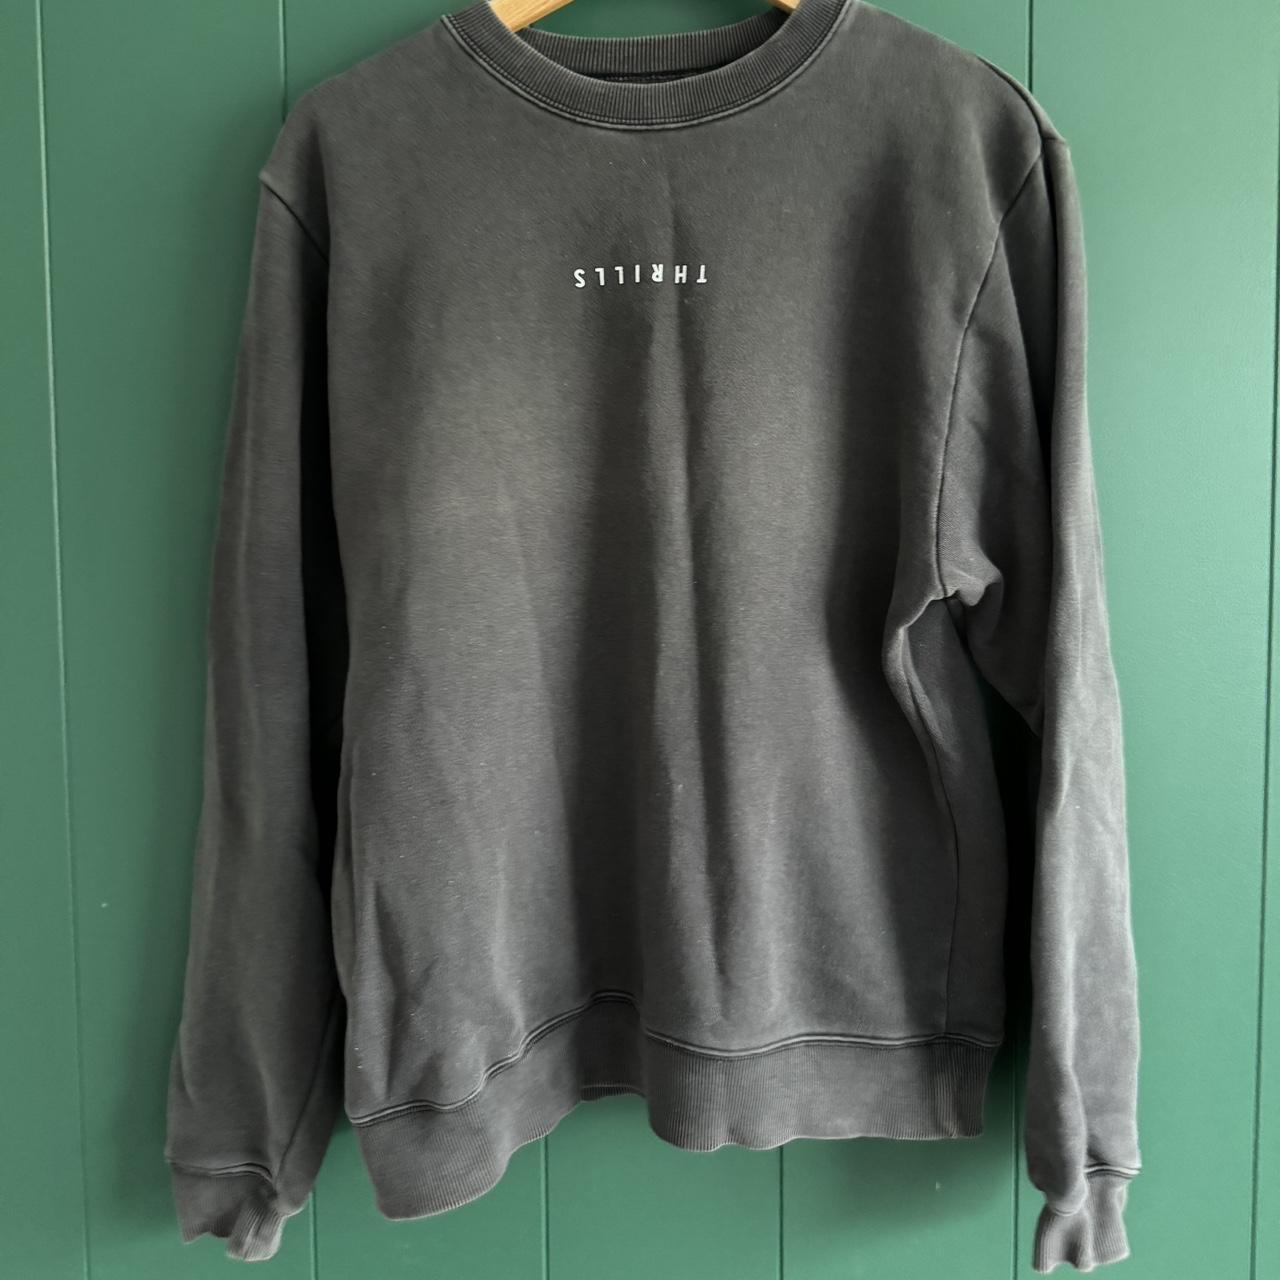 THRILLS Grey sweater Size AU 10 Good condition - Depop